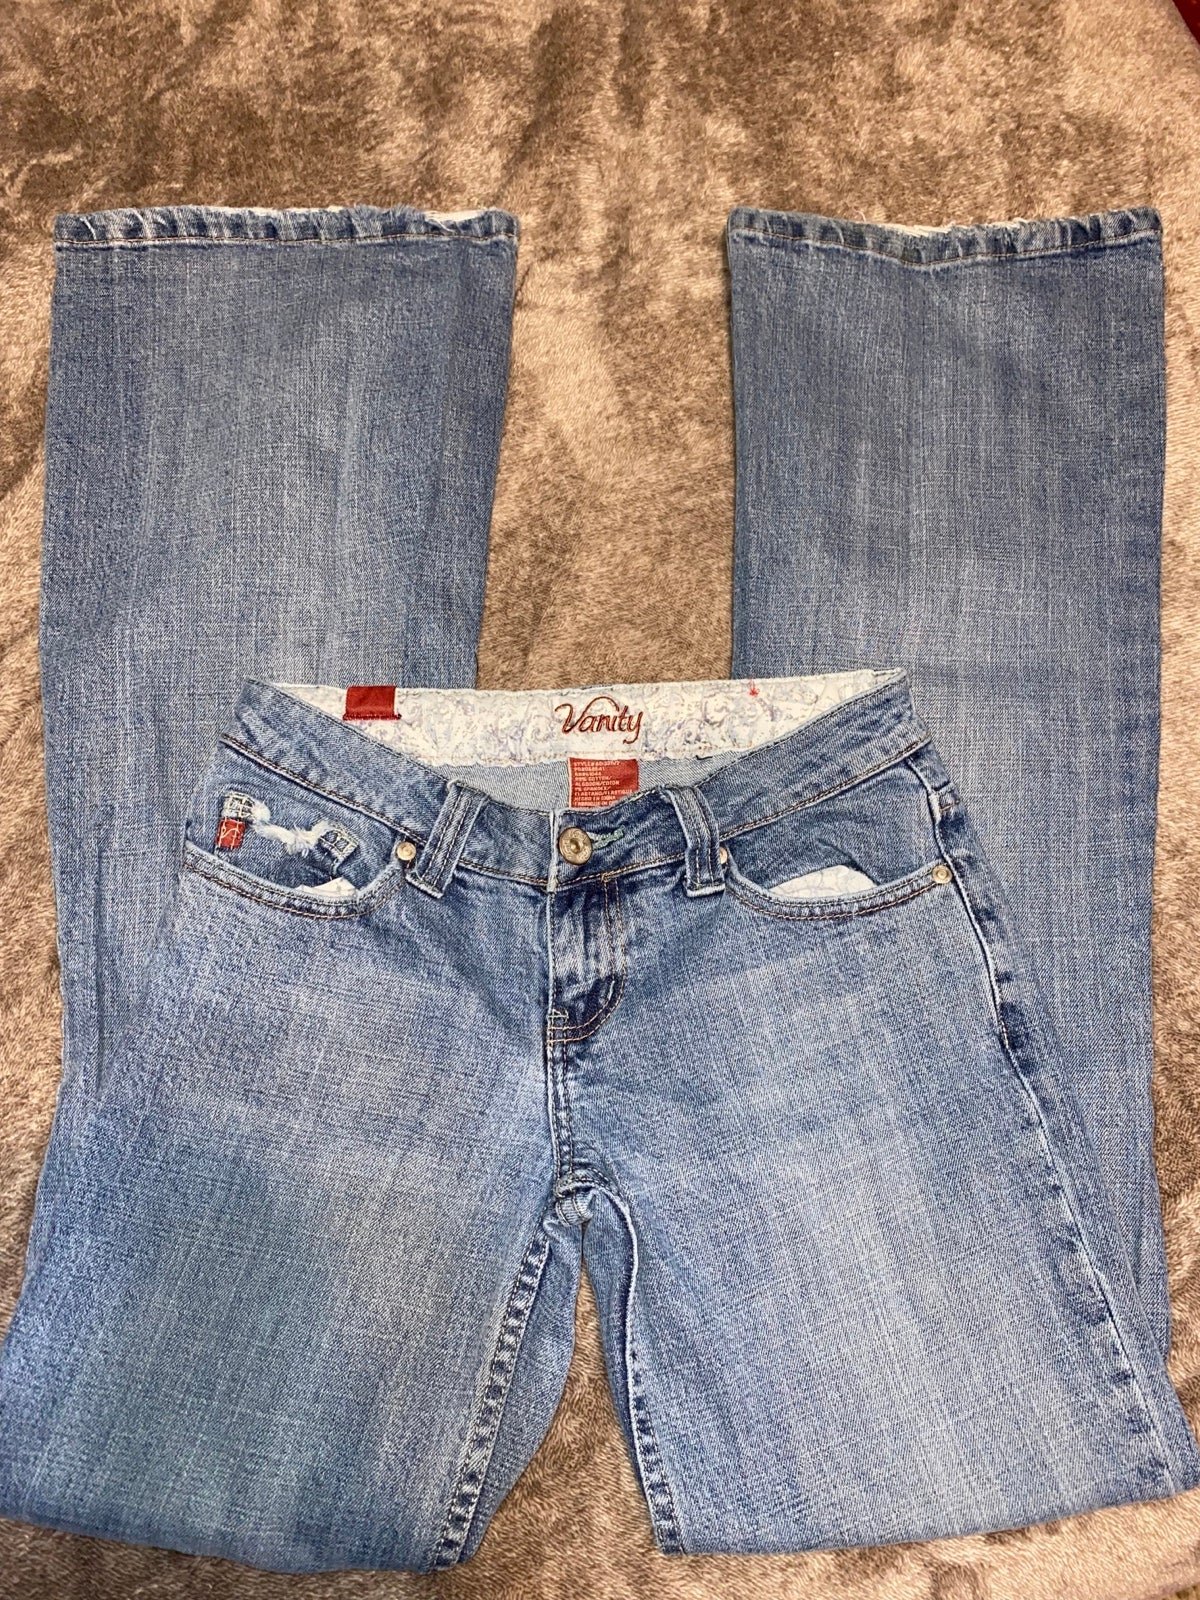 Custom Vanity jeans iuTLH4Jc6 Everyday Low Prices